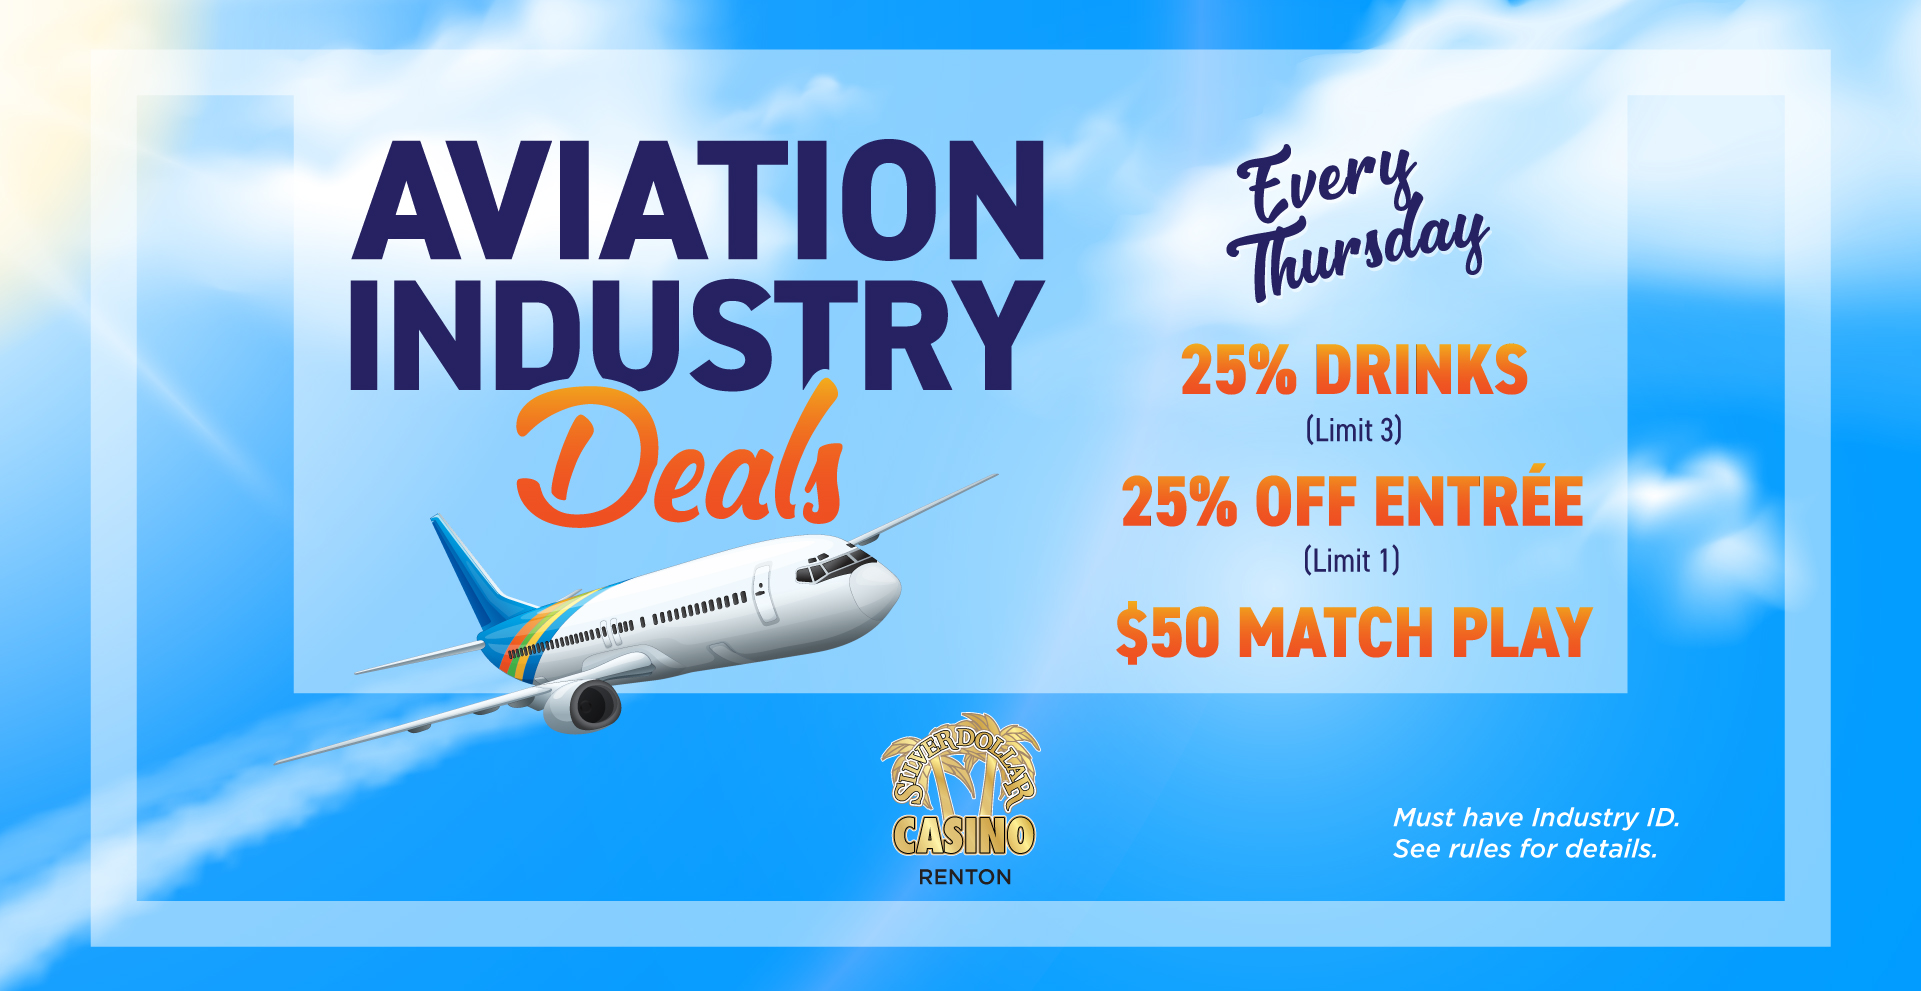 Silver Dollar Casino Renton | Aviation Industry Deals